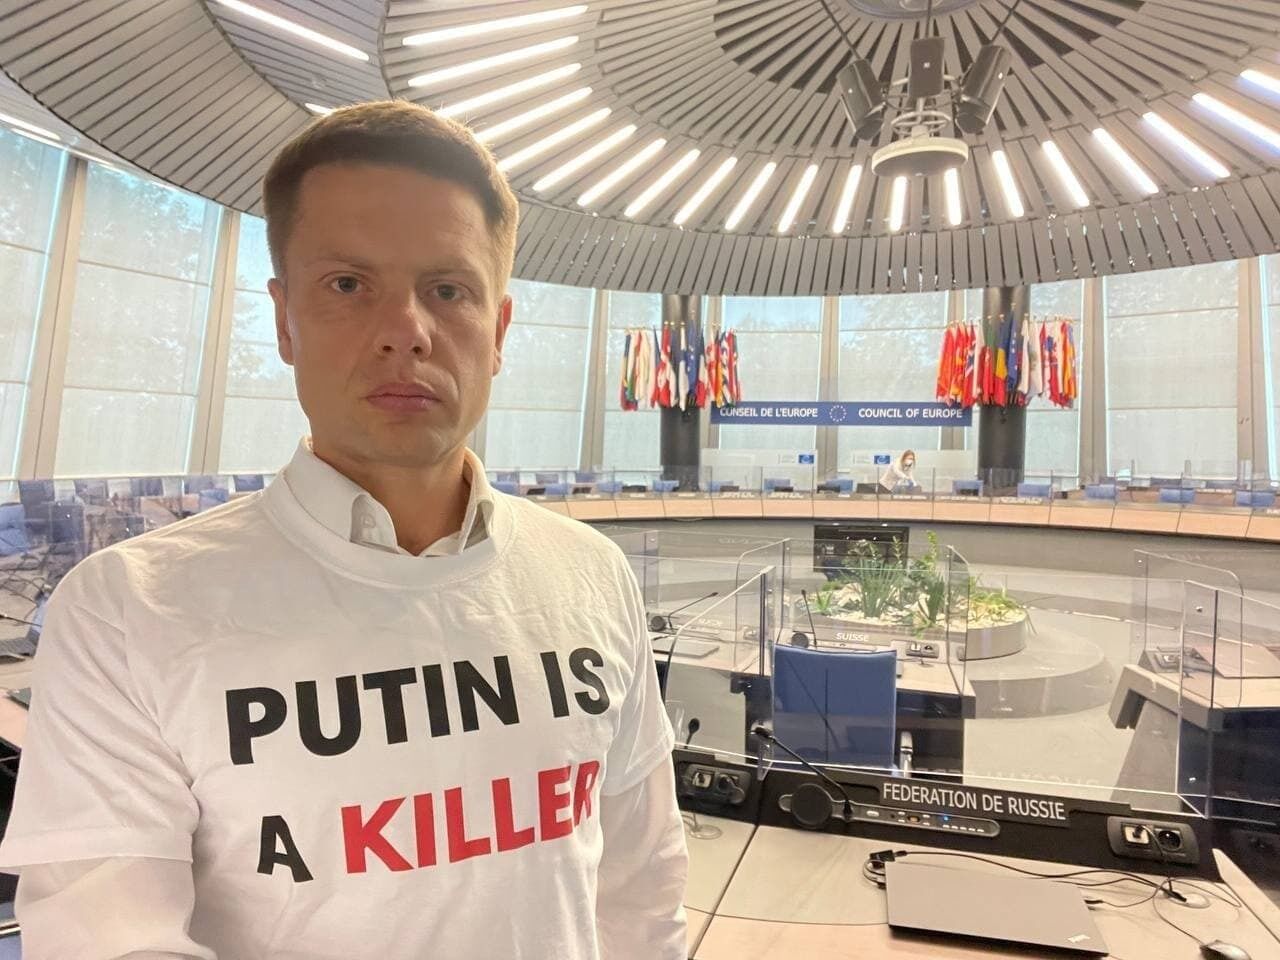 Гончаренко у футболці "Путін вбивця".